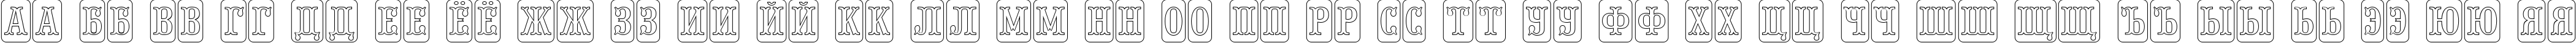 Пример написания русского алфавита шрифтом a_PresentumNrCmDcOtl